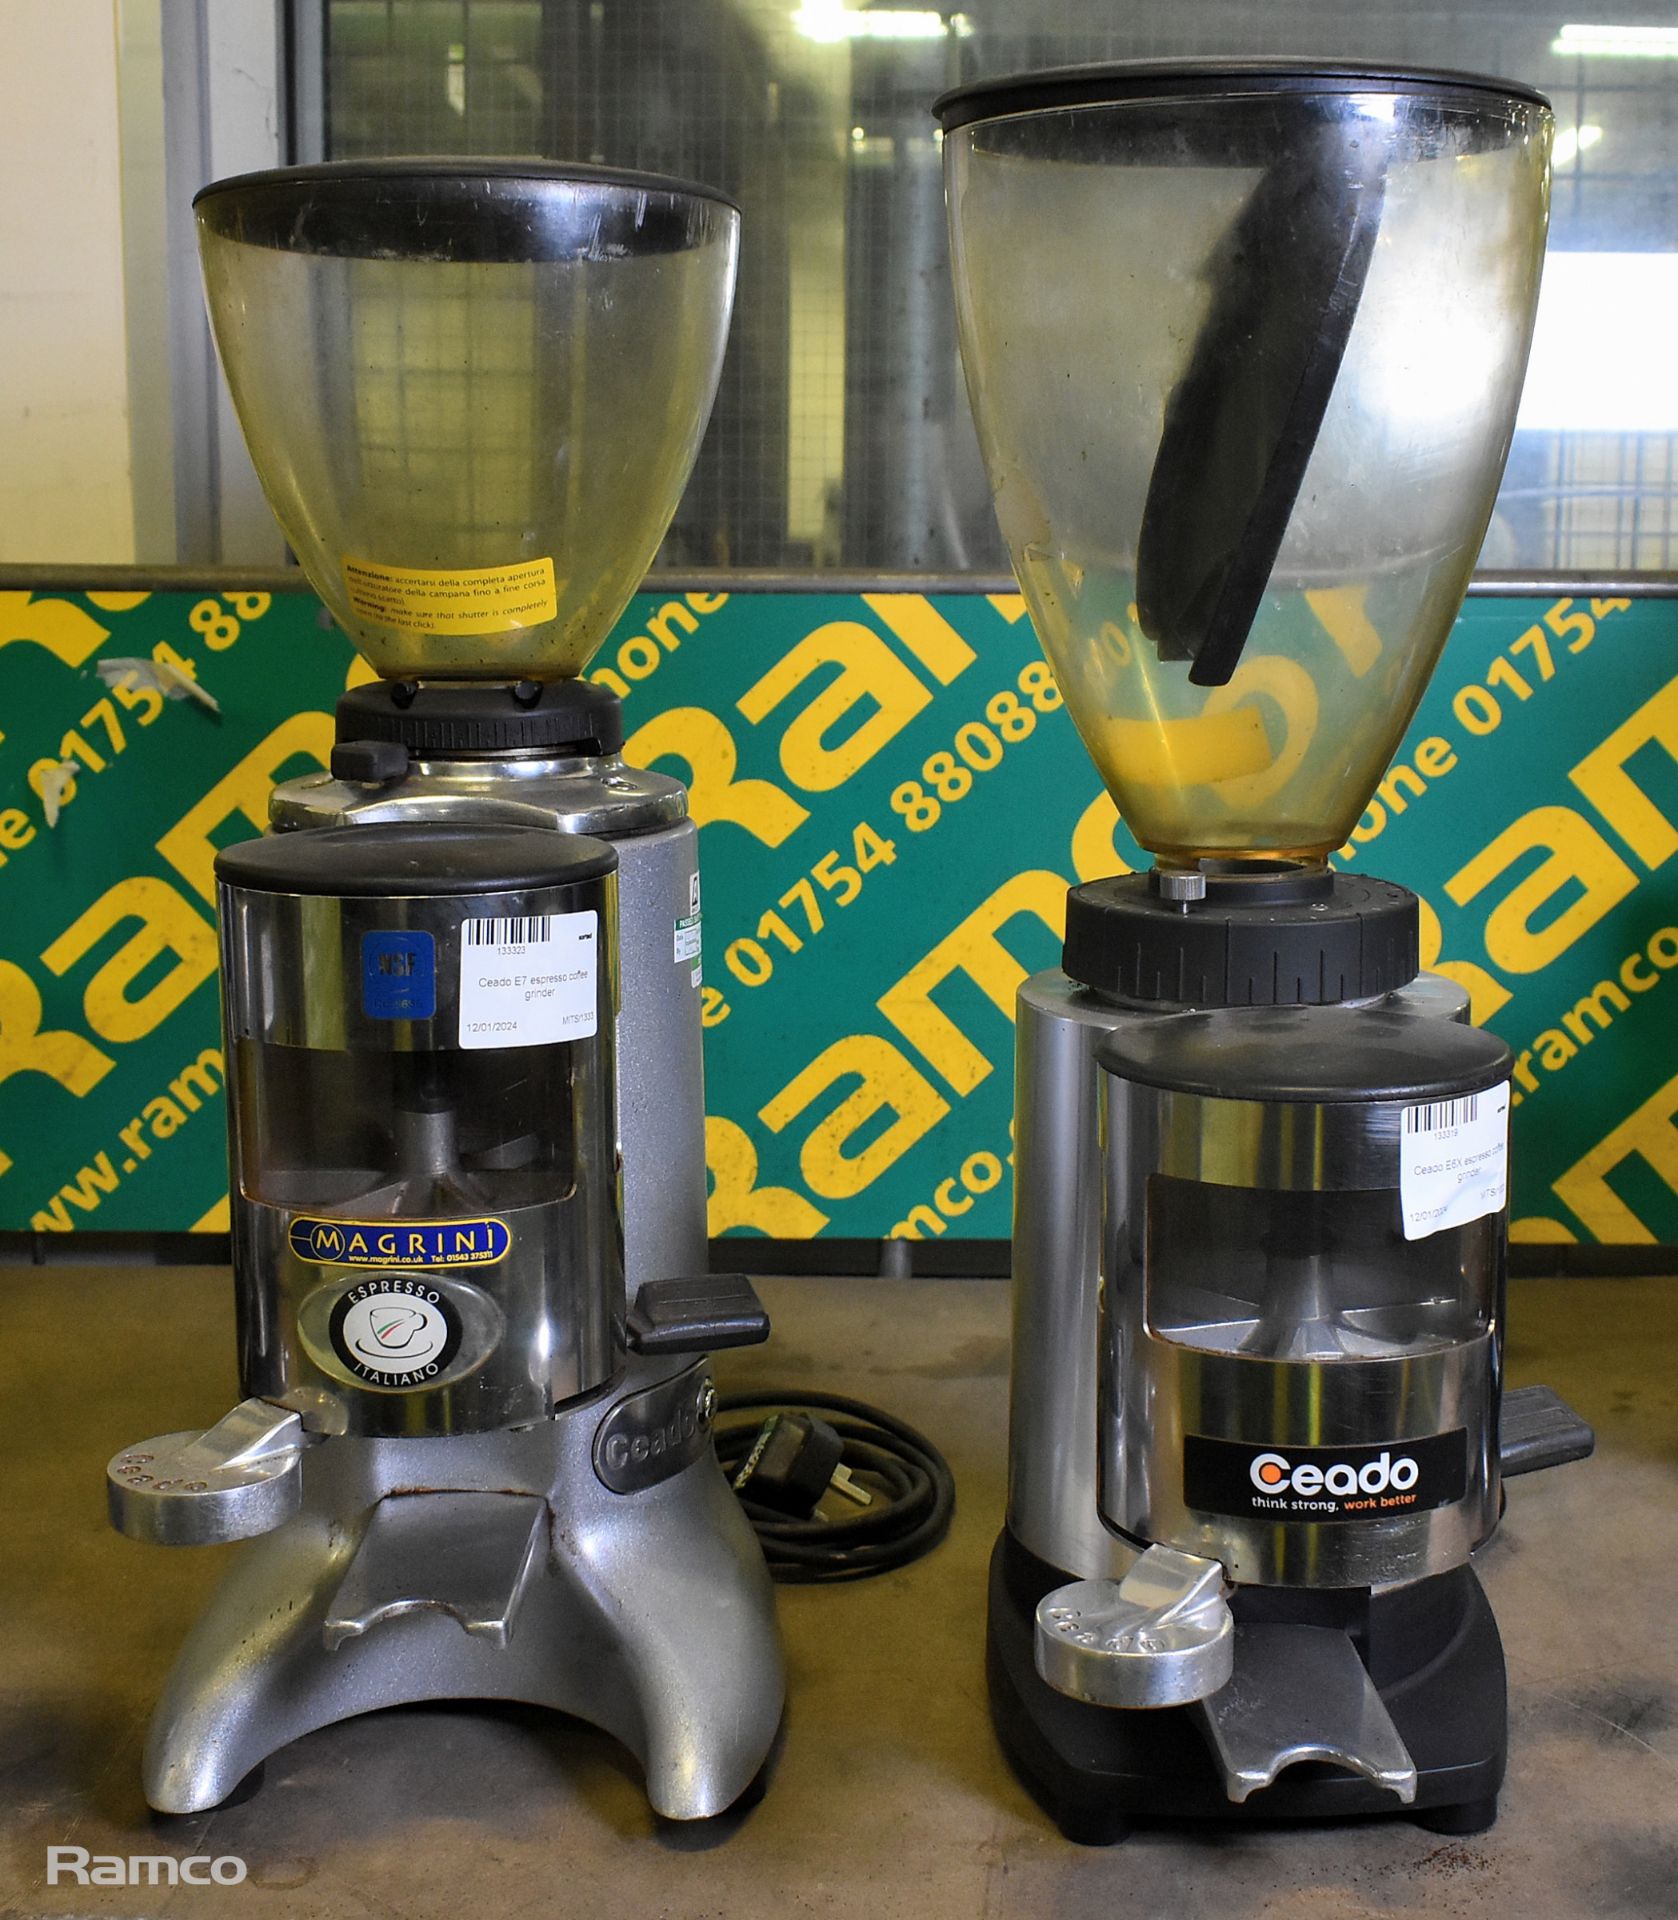 Ceado E6X espresso coffee grinder, Ceado E7 espresso coffee grinder